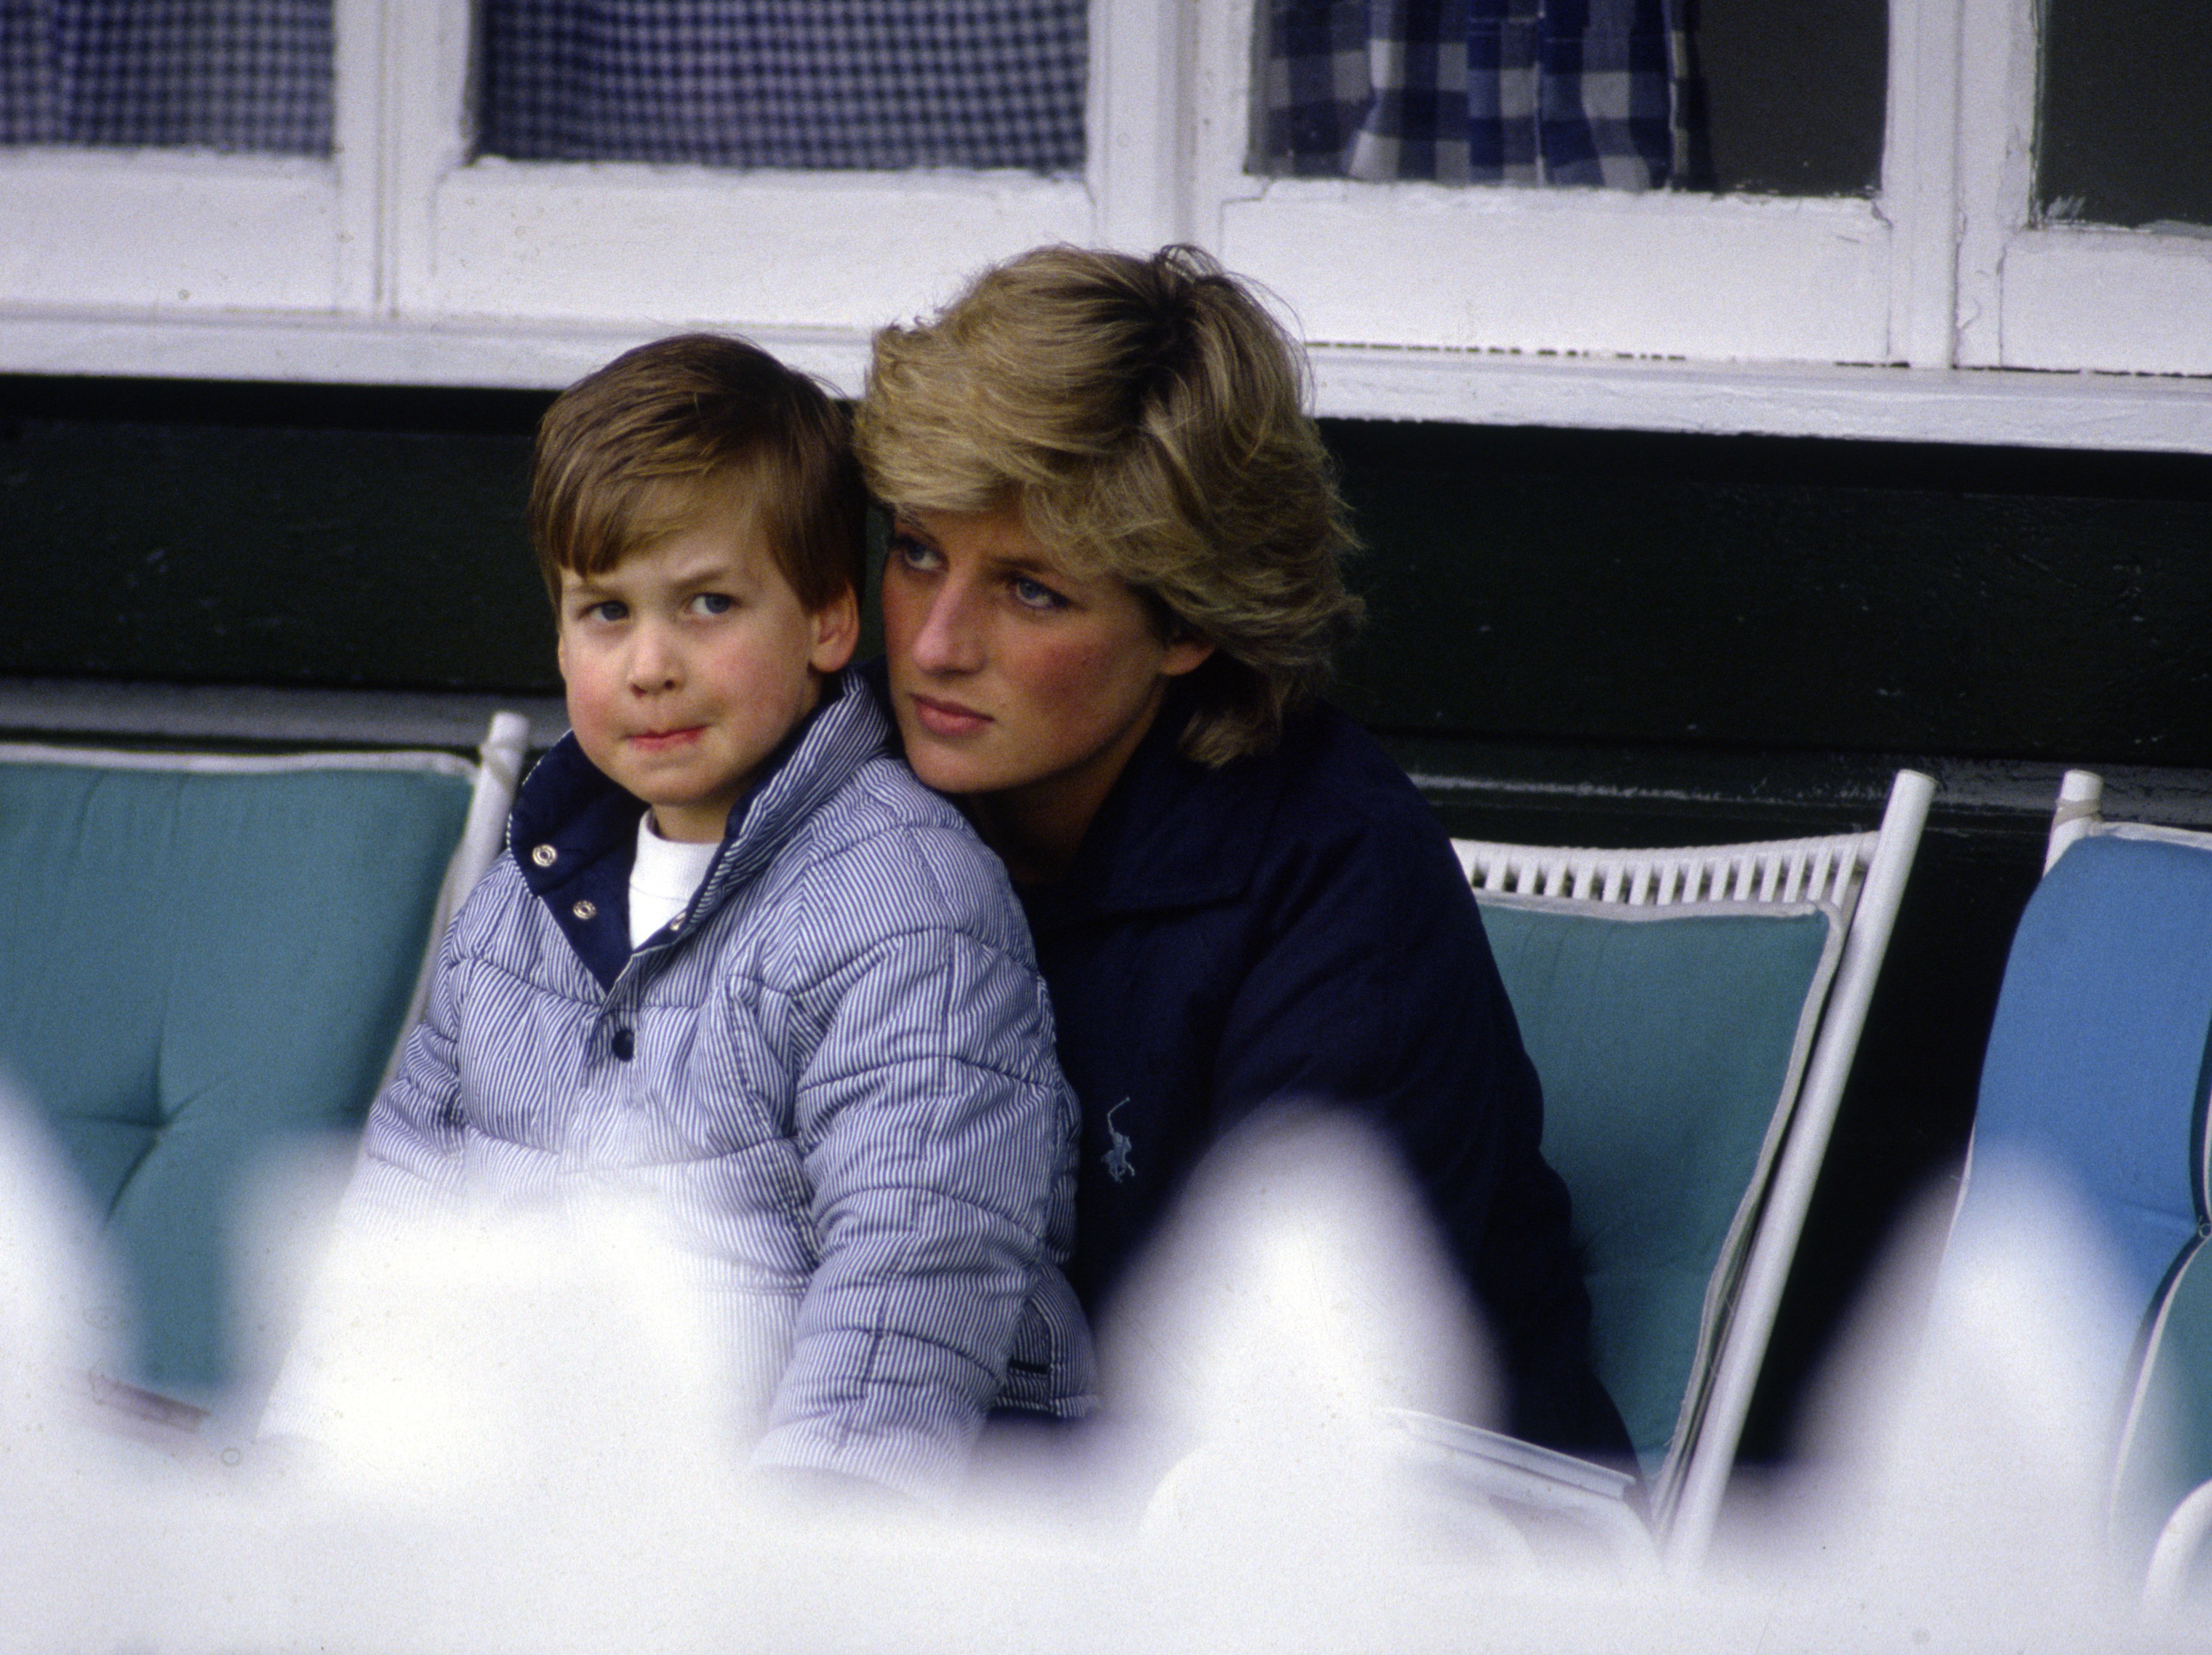 Le Prince William au Guards Polo Club, réconforté par sa mère, la Princesse Diana | Source : Getty Images